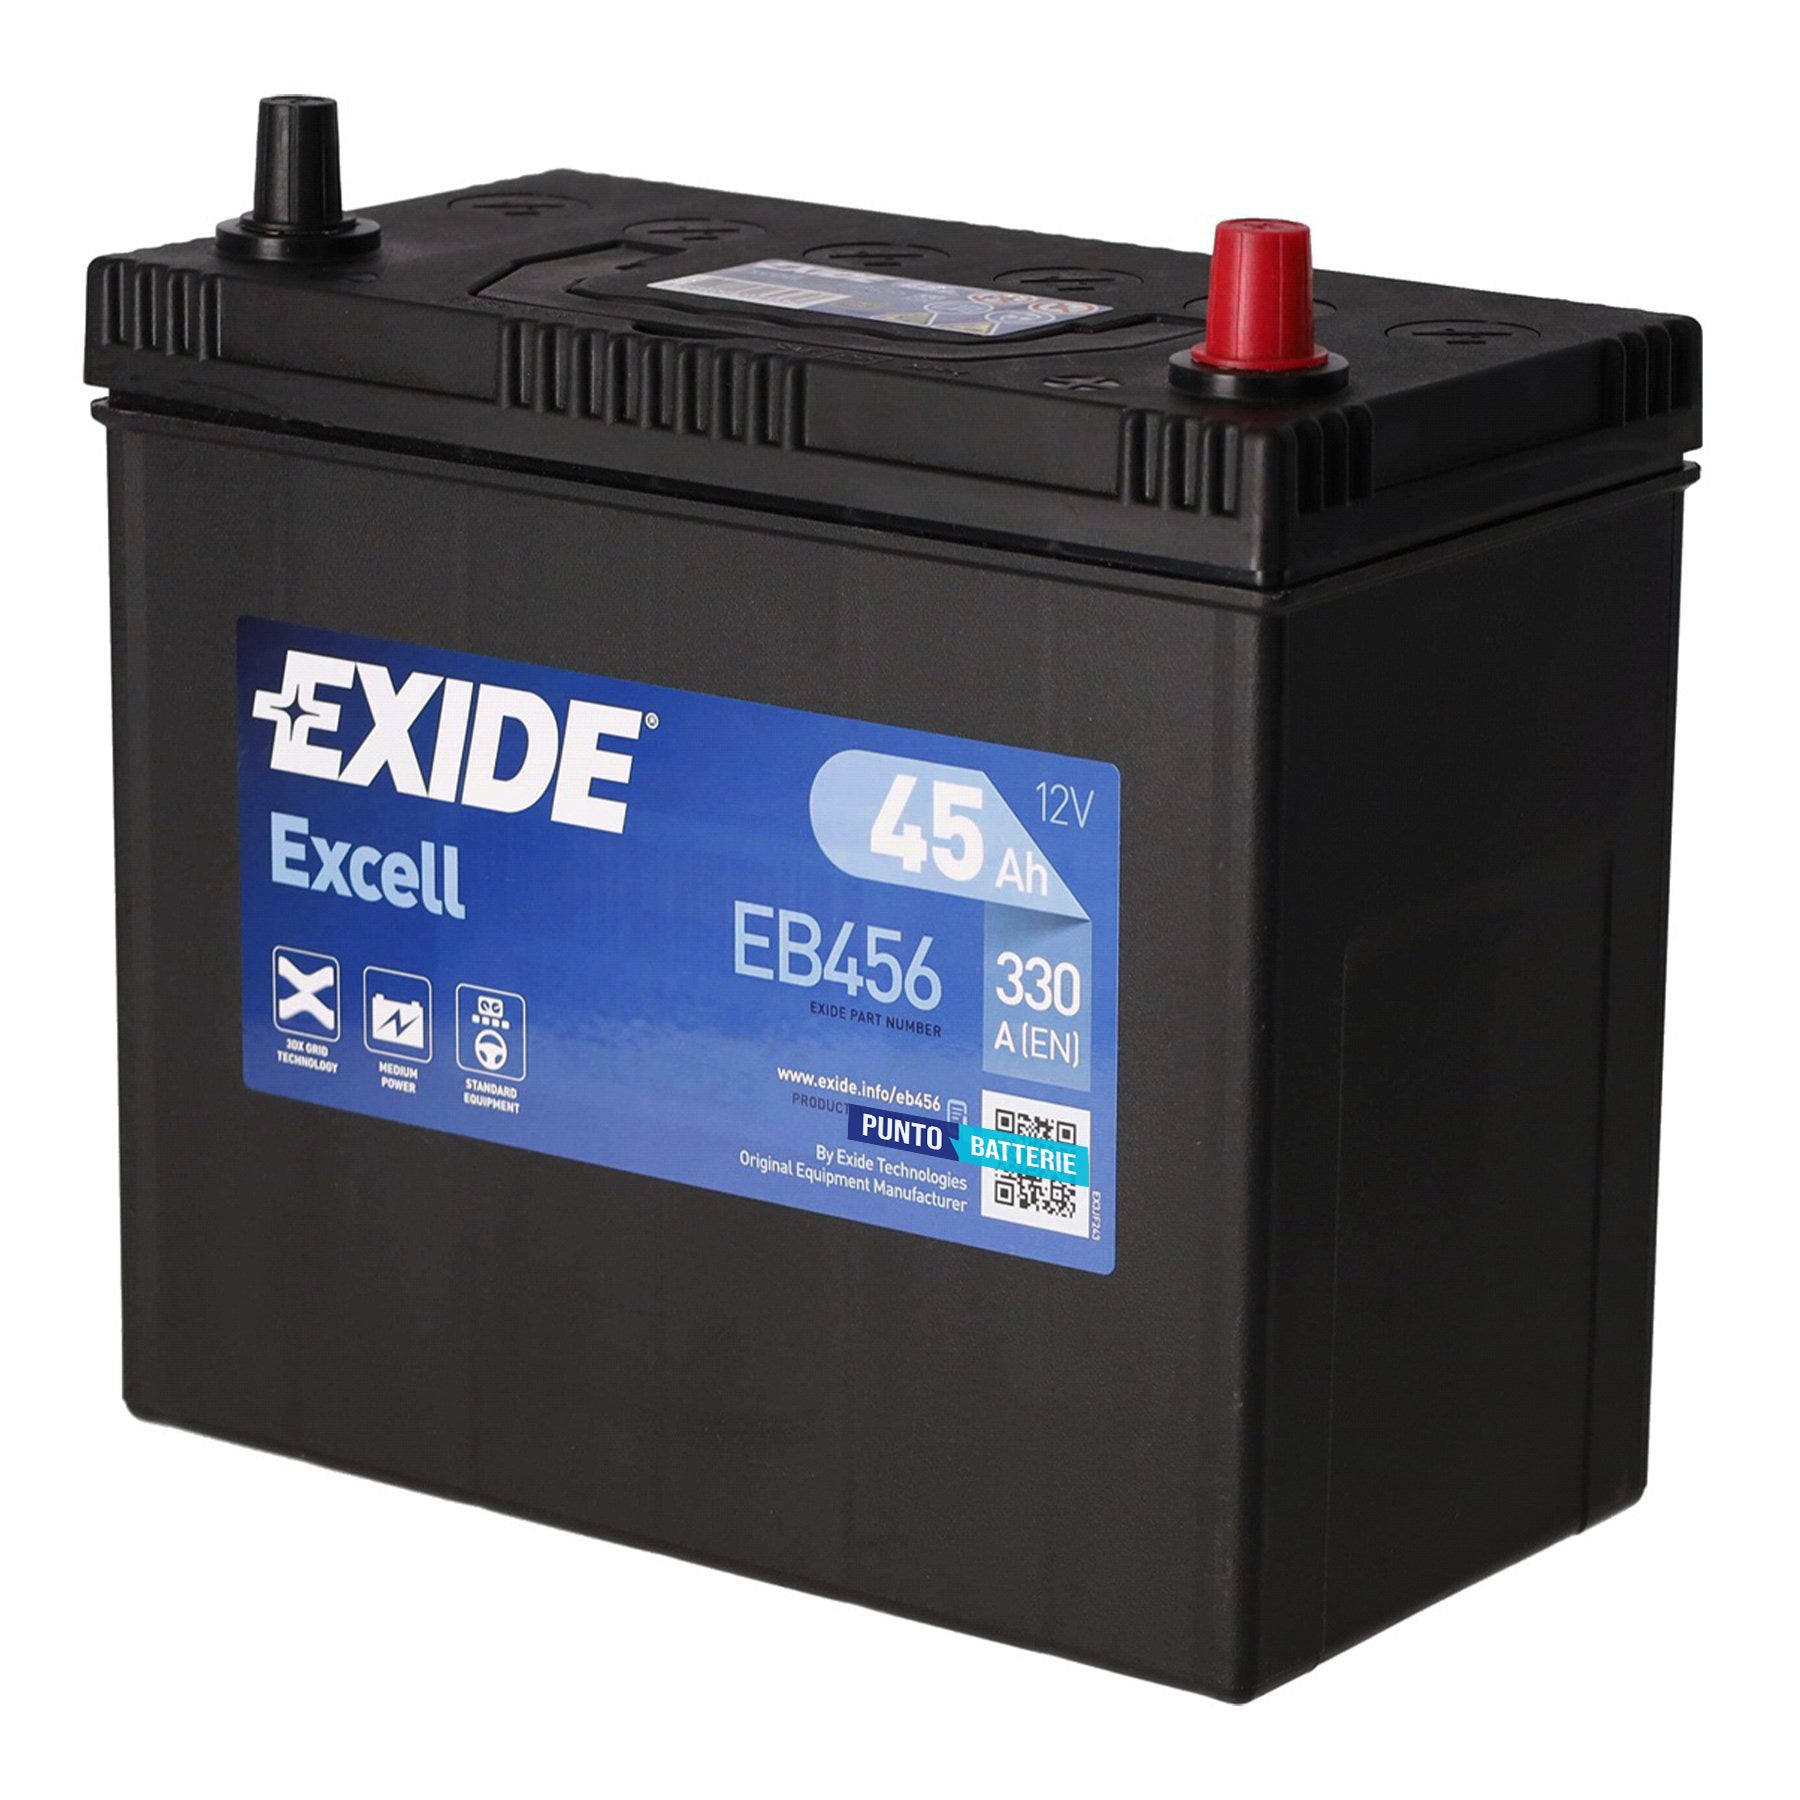 Batteria originale Exide Excell EB456, dimensioni 237 x 127 x 227, polo positivo a destra, 12 volt, 45 amperora, 330 ampere. Batteria per auto e veicoli leggeri.